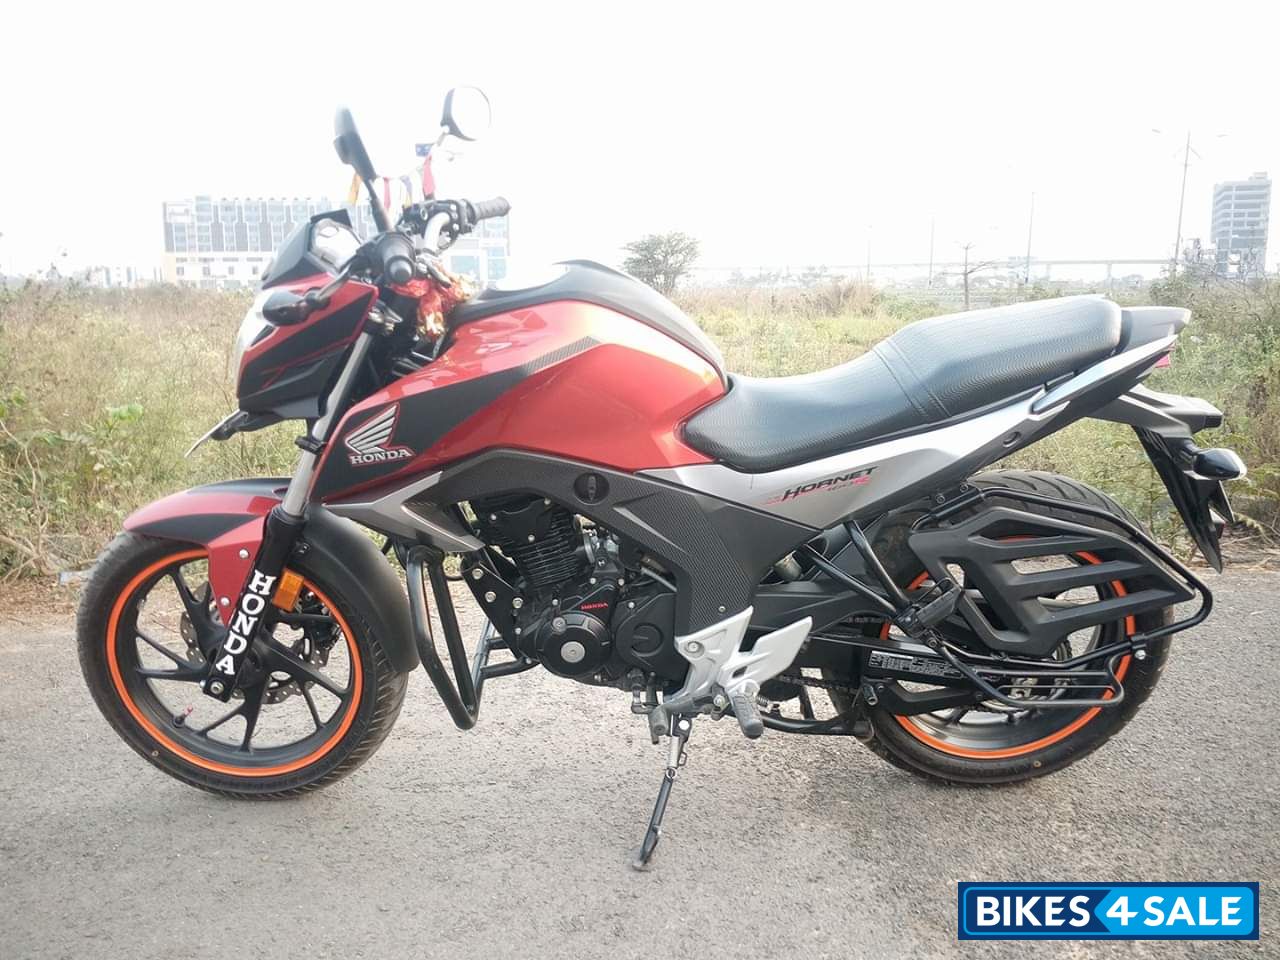 Honda Hornet Bike Price In Kolkata Women And Bike